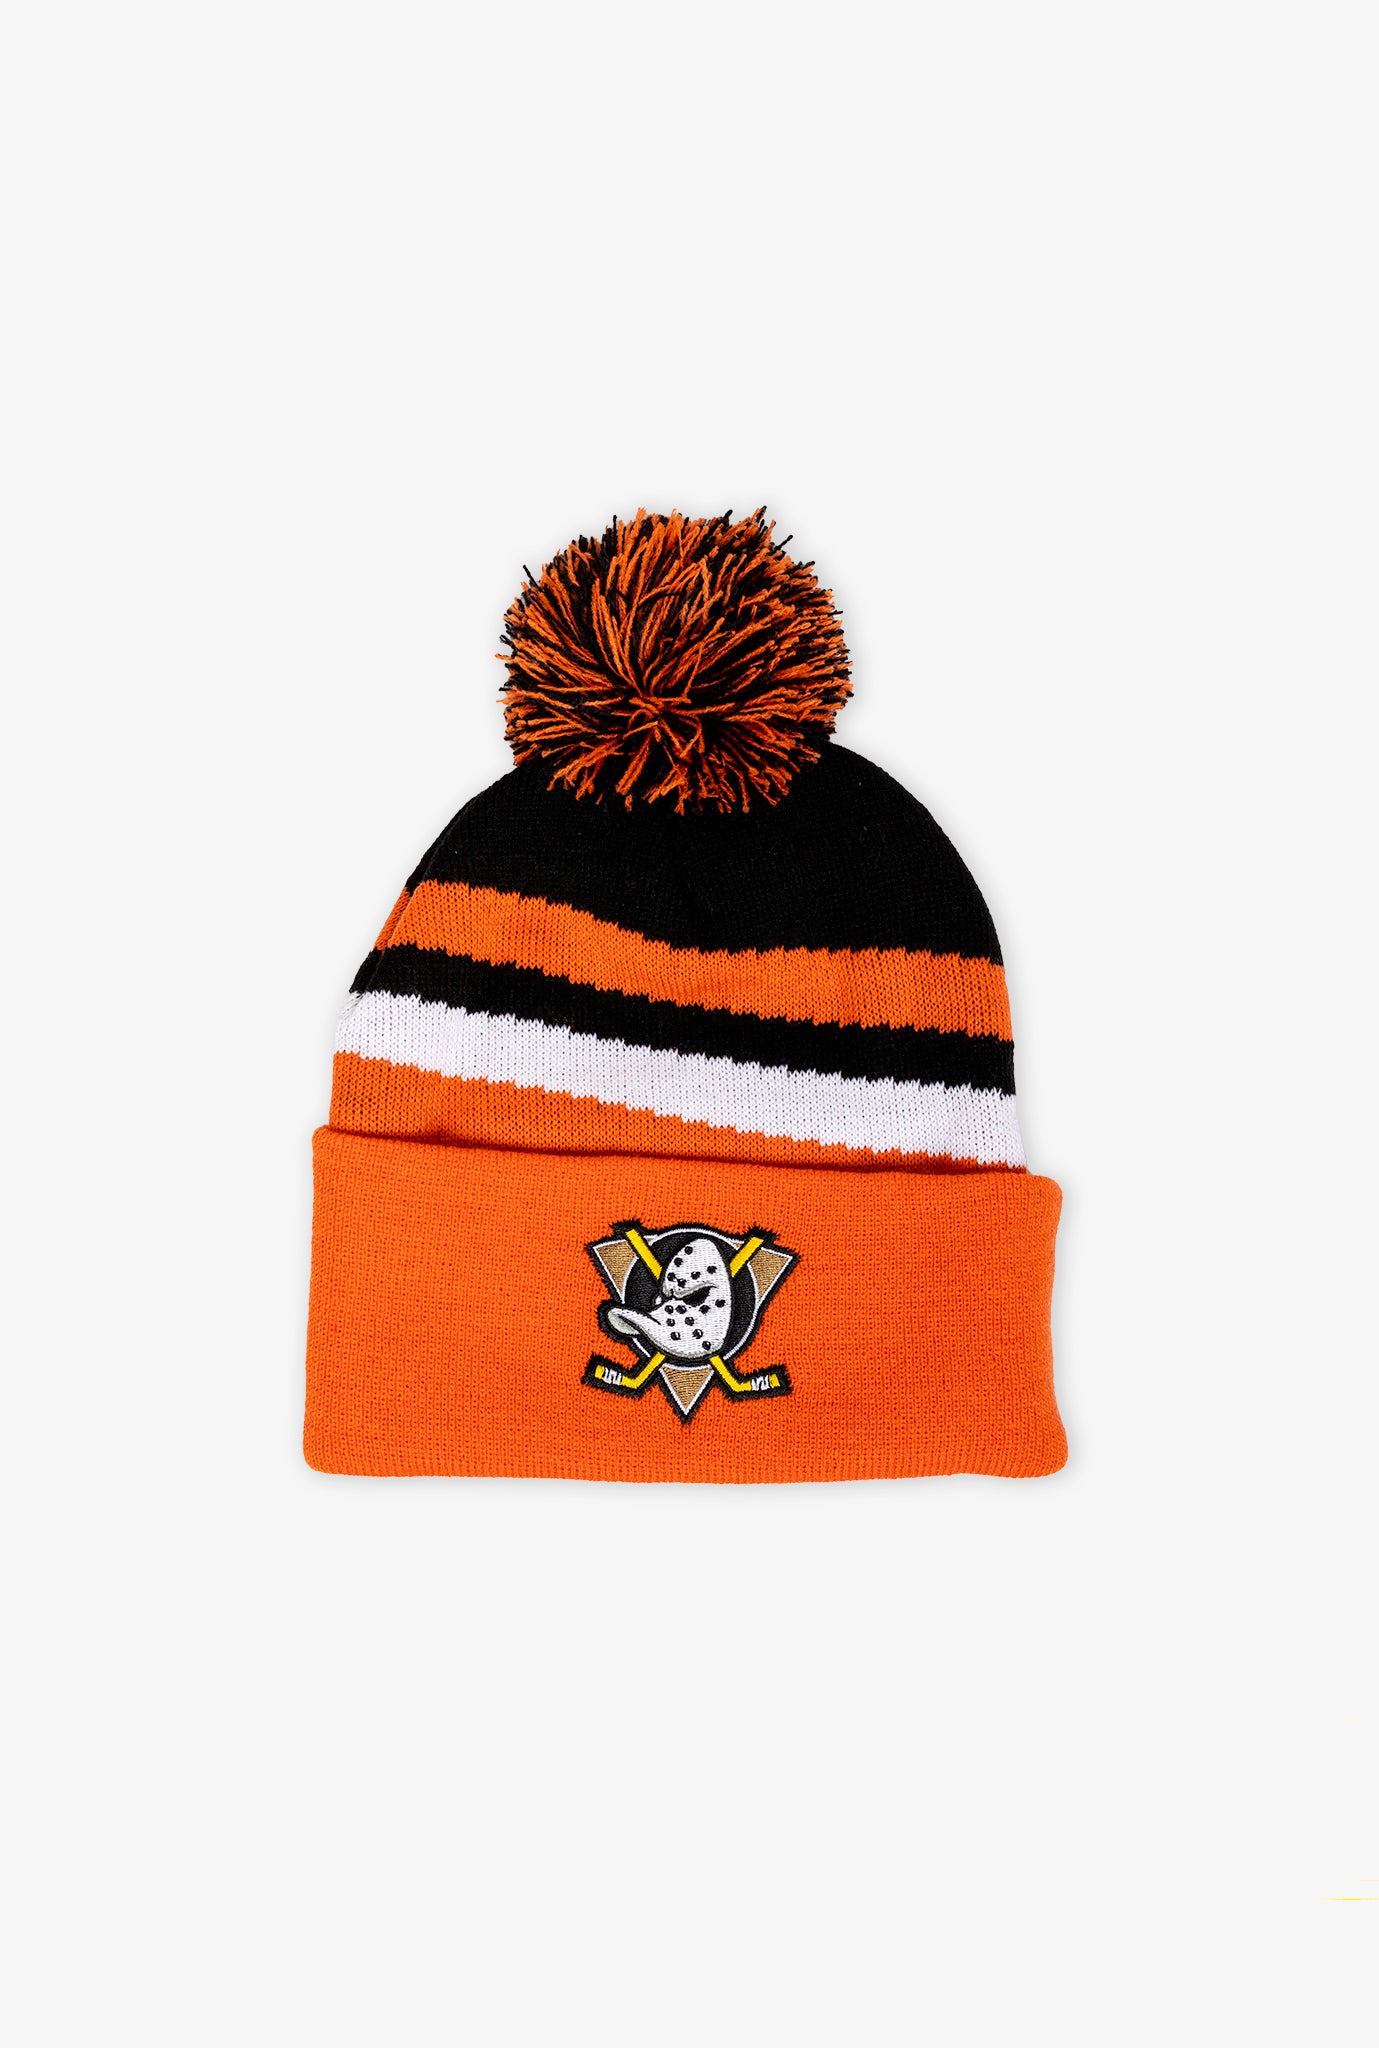 Anaheim Ducks Pom Stripe Knit Toque - Orange/Black